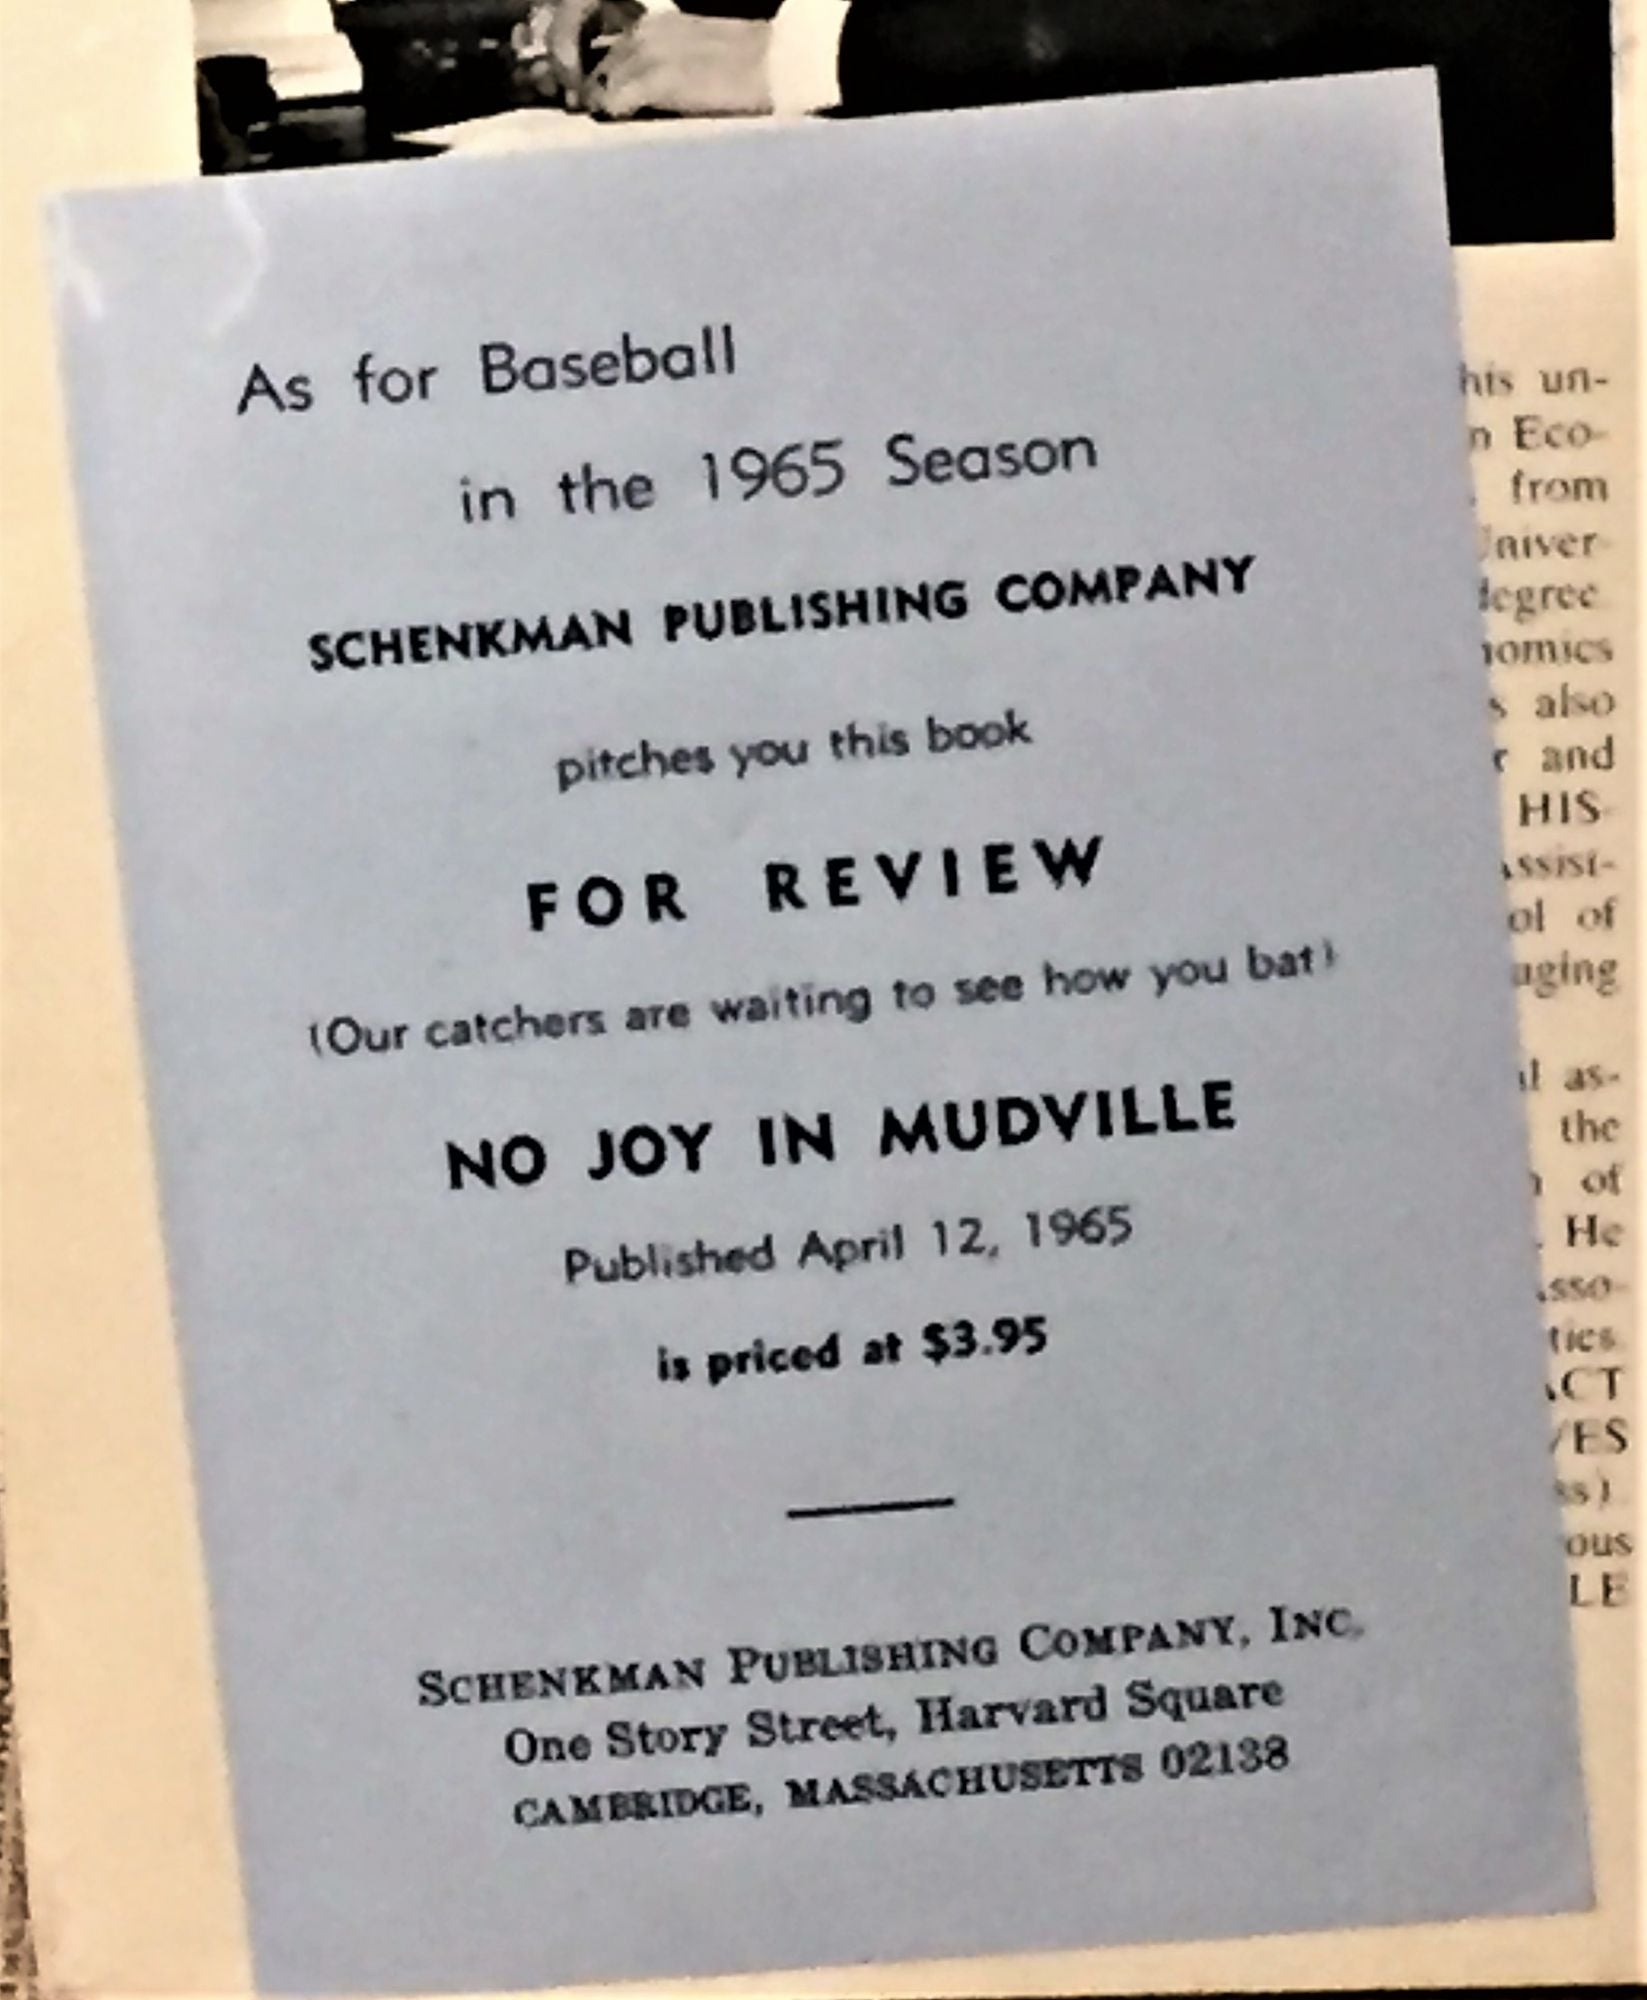 No joy in Mudville